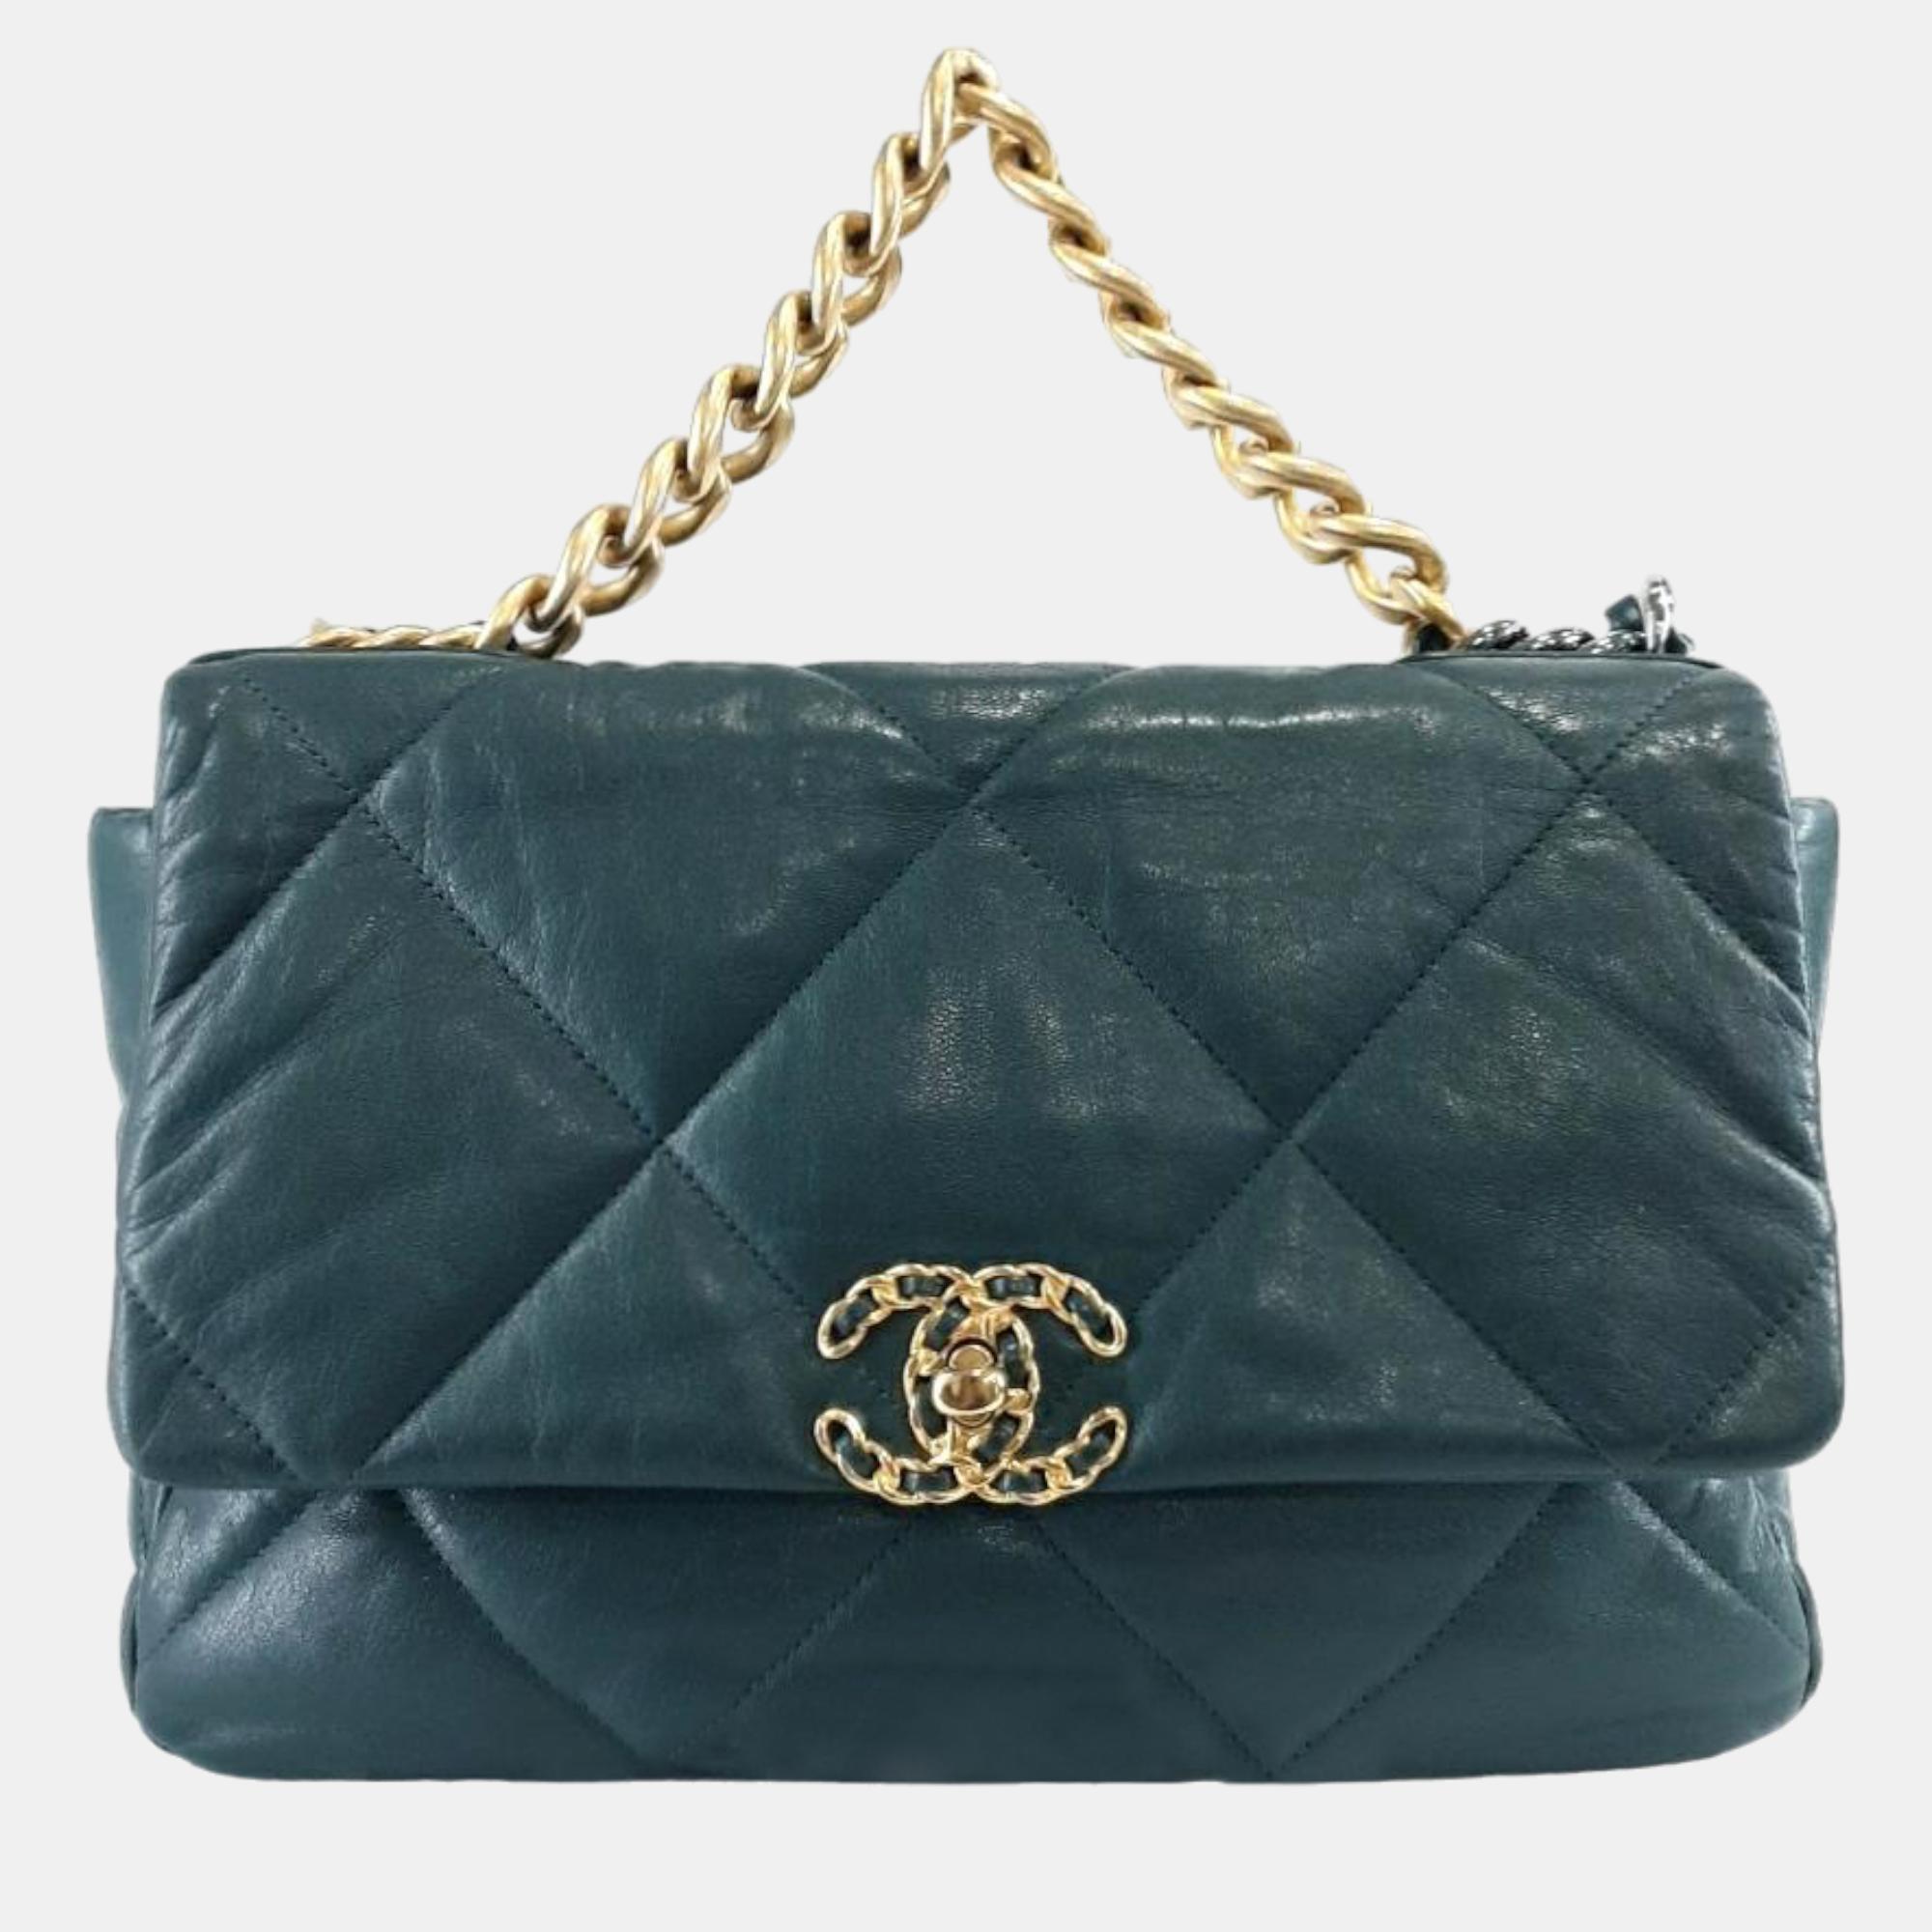 Chanel Green Leather Large 19 Flap Shoulder Bag